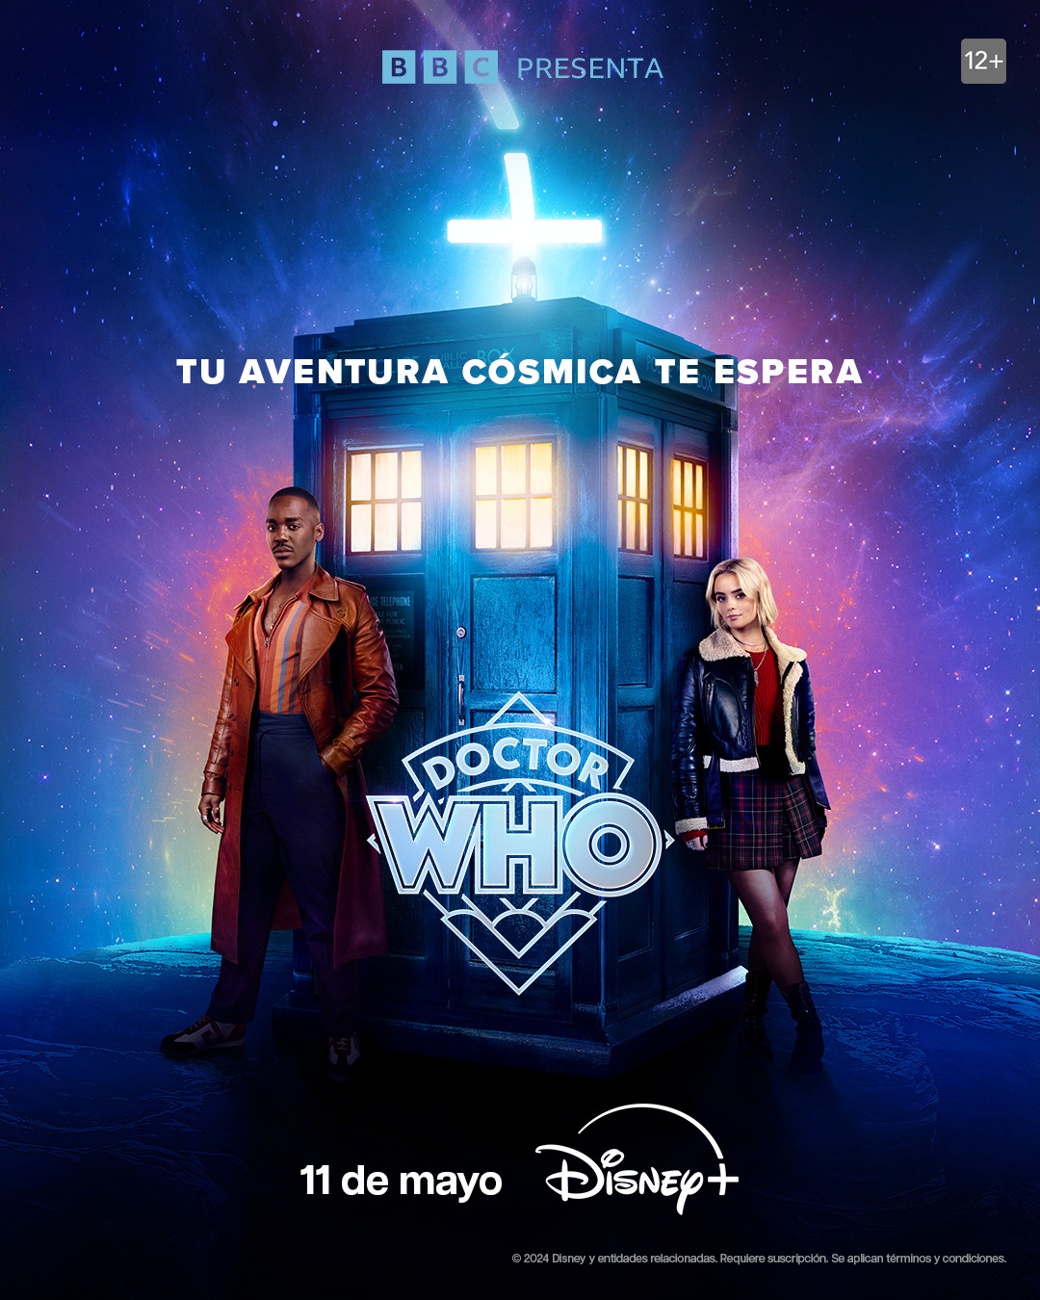 “Doctor Who”, 11 de mayo